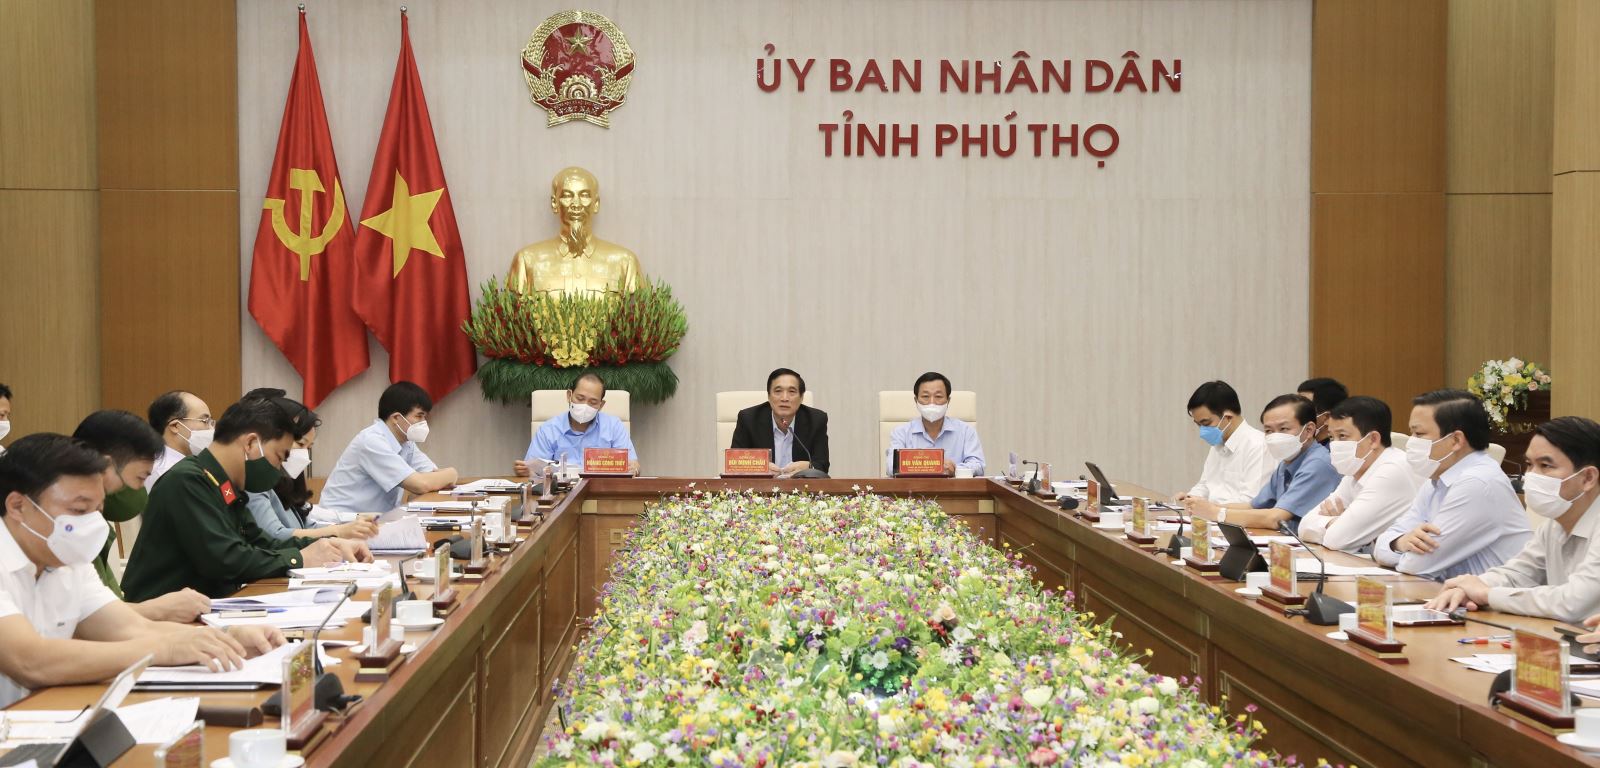 Bí thư Tỉnh ủy Phú Thọ chủ trì hội nghị trực tuyến với thành phố Việt Trì và huyện Lâm Thao để triển khai các biện pháp cấp bách phòng chống dịch COVID-19